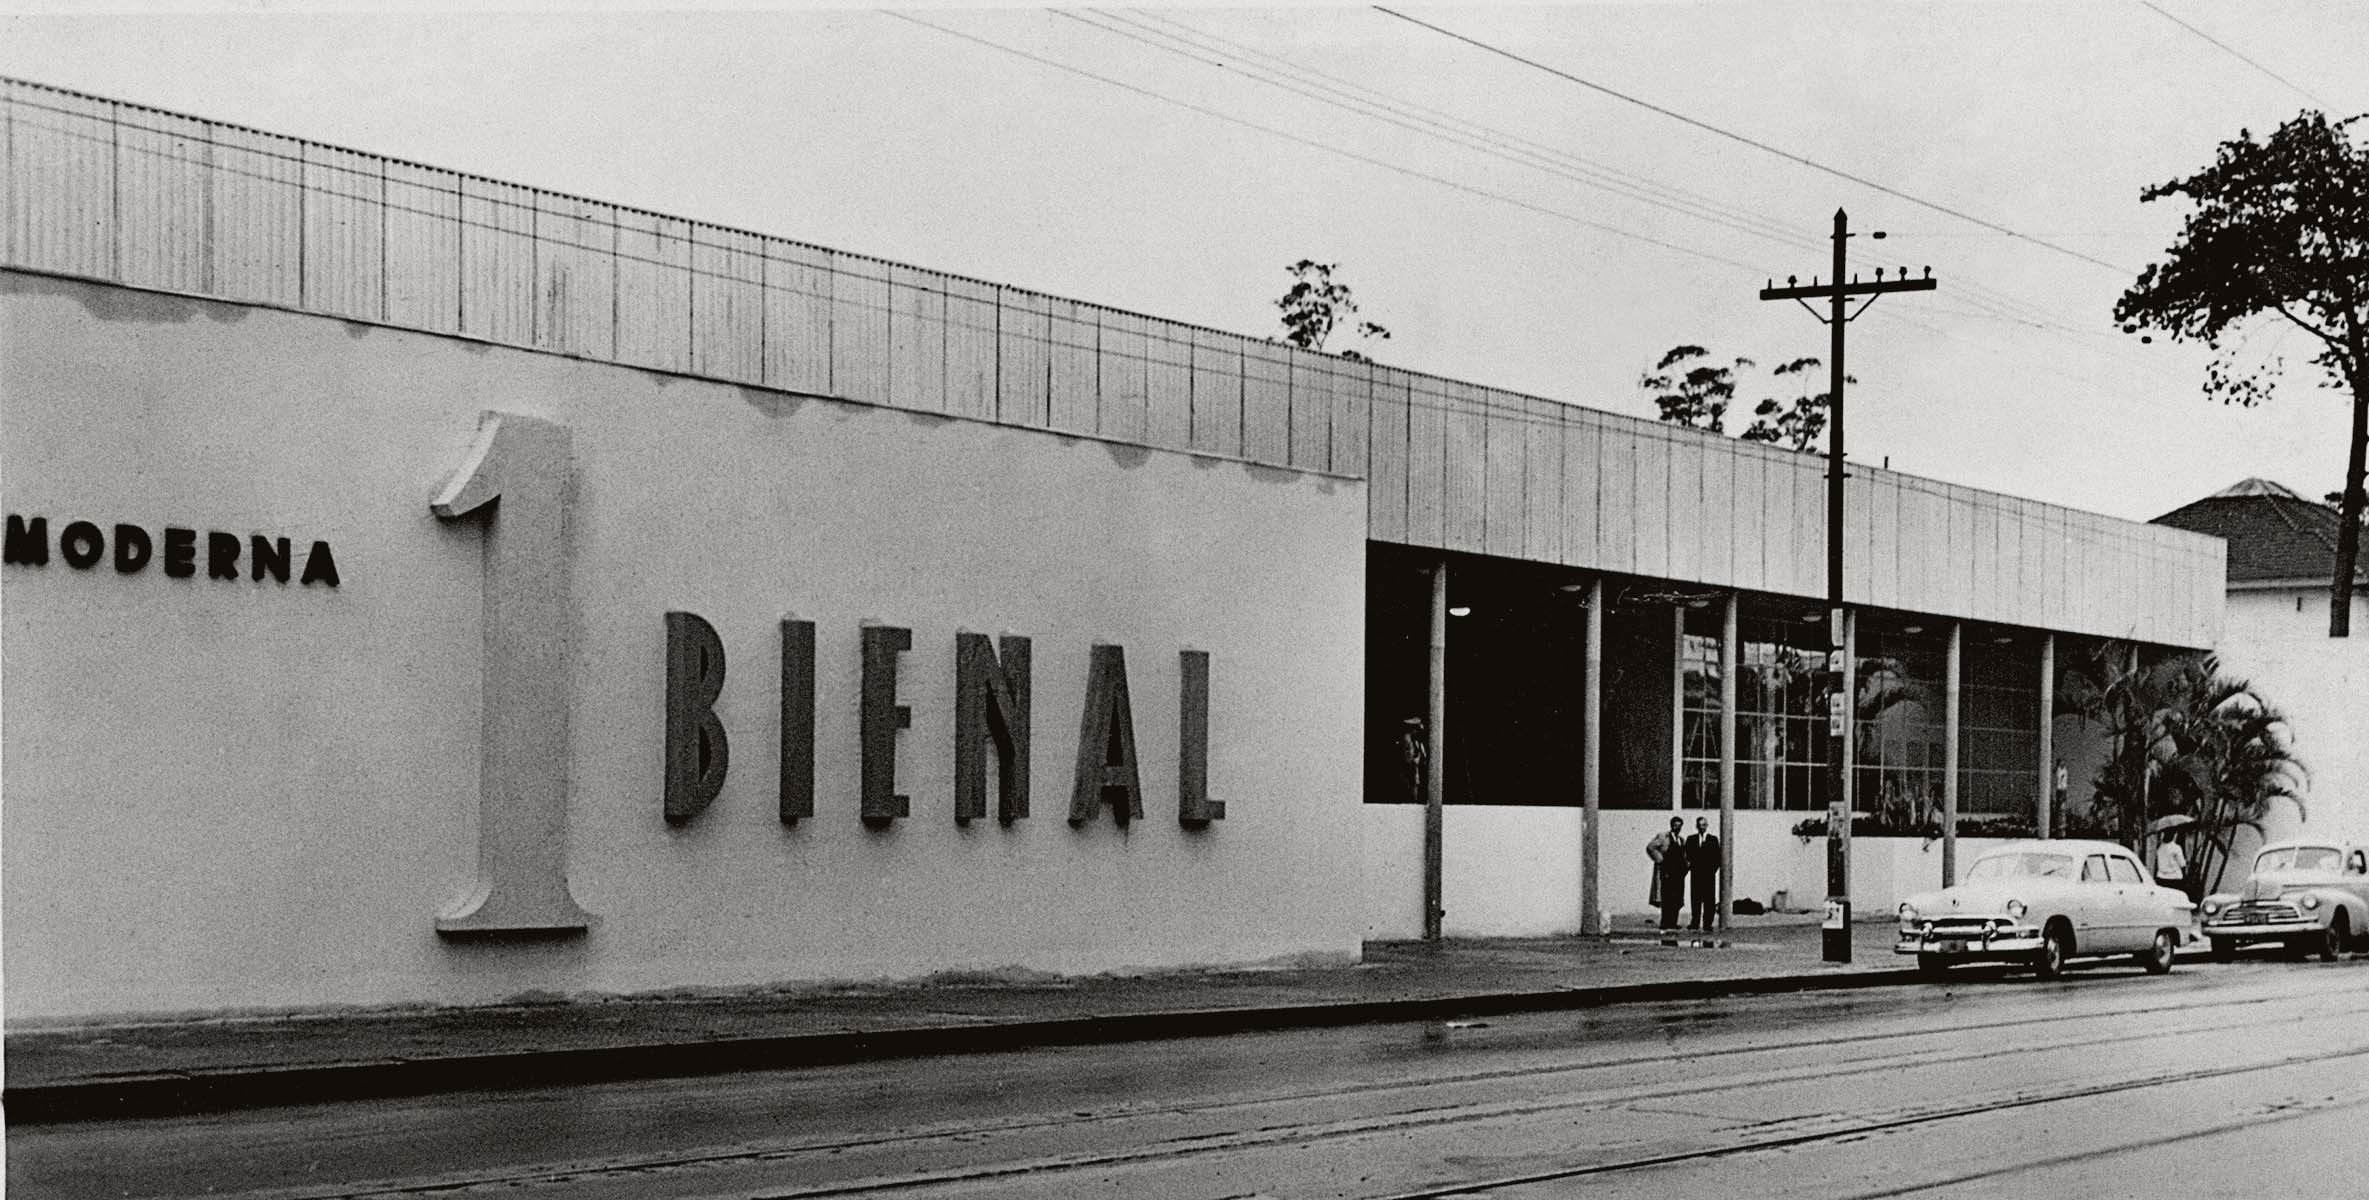 Documentário comenta a história da Bienal de São Paulo VEJA SÃO PAULO